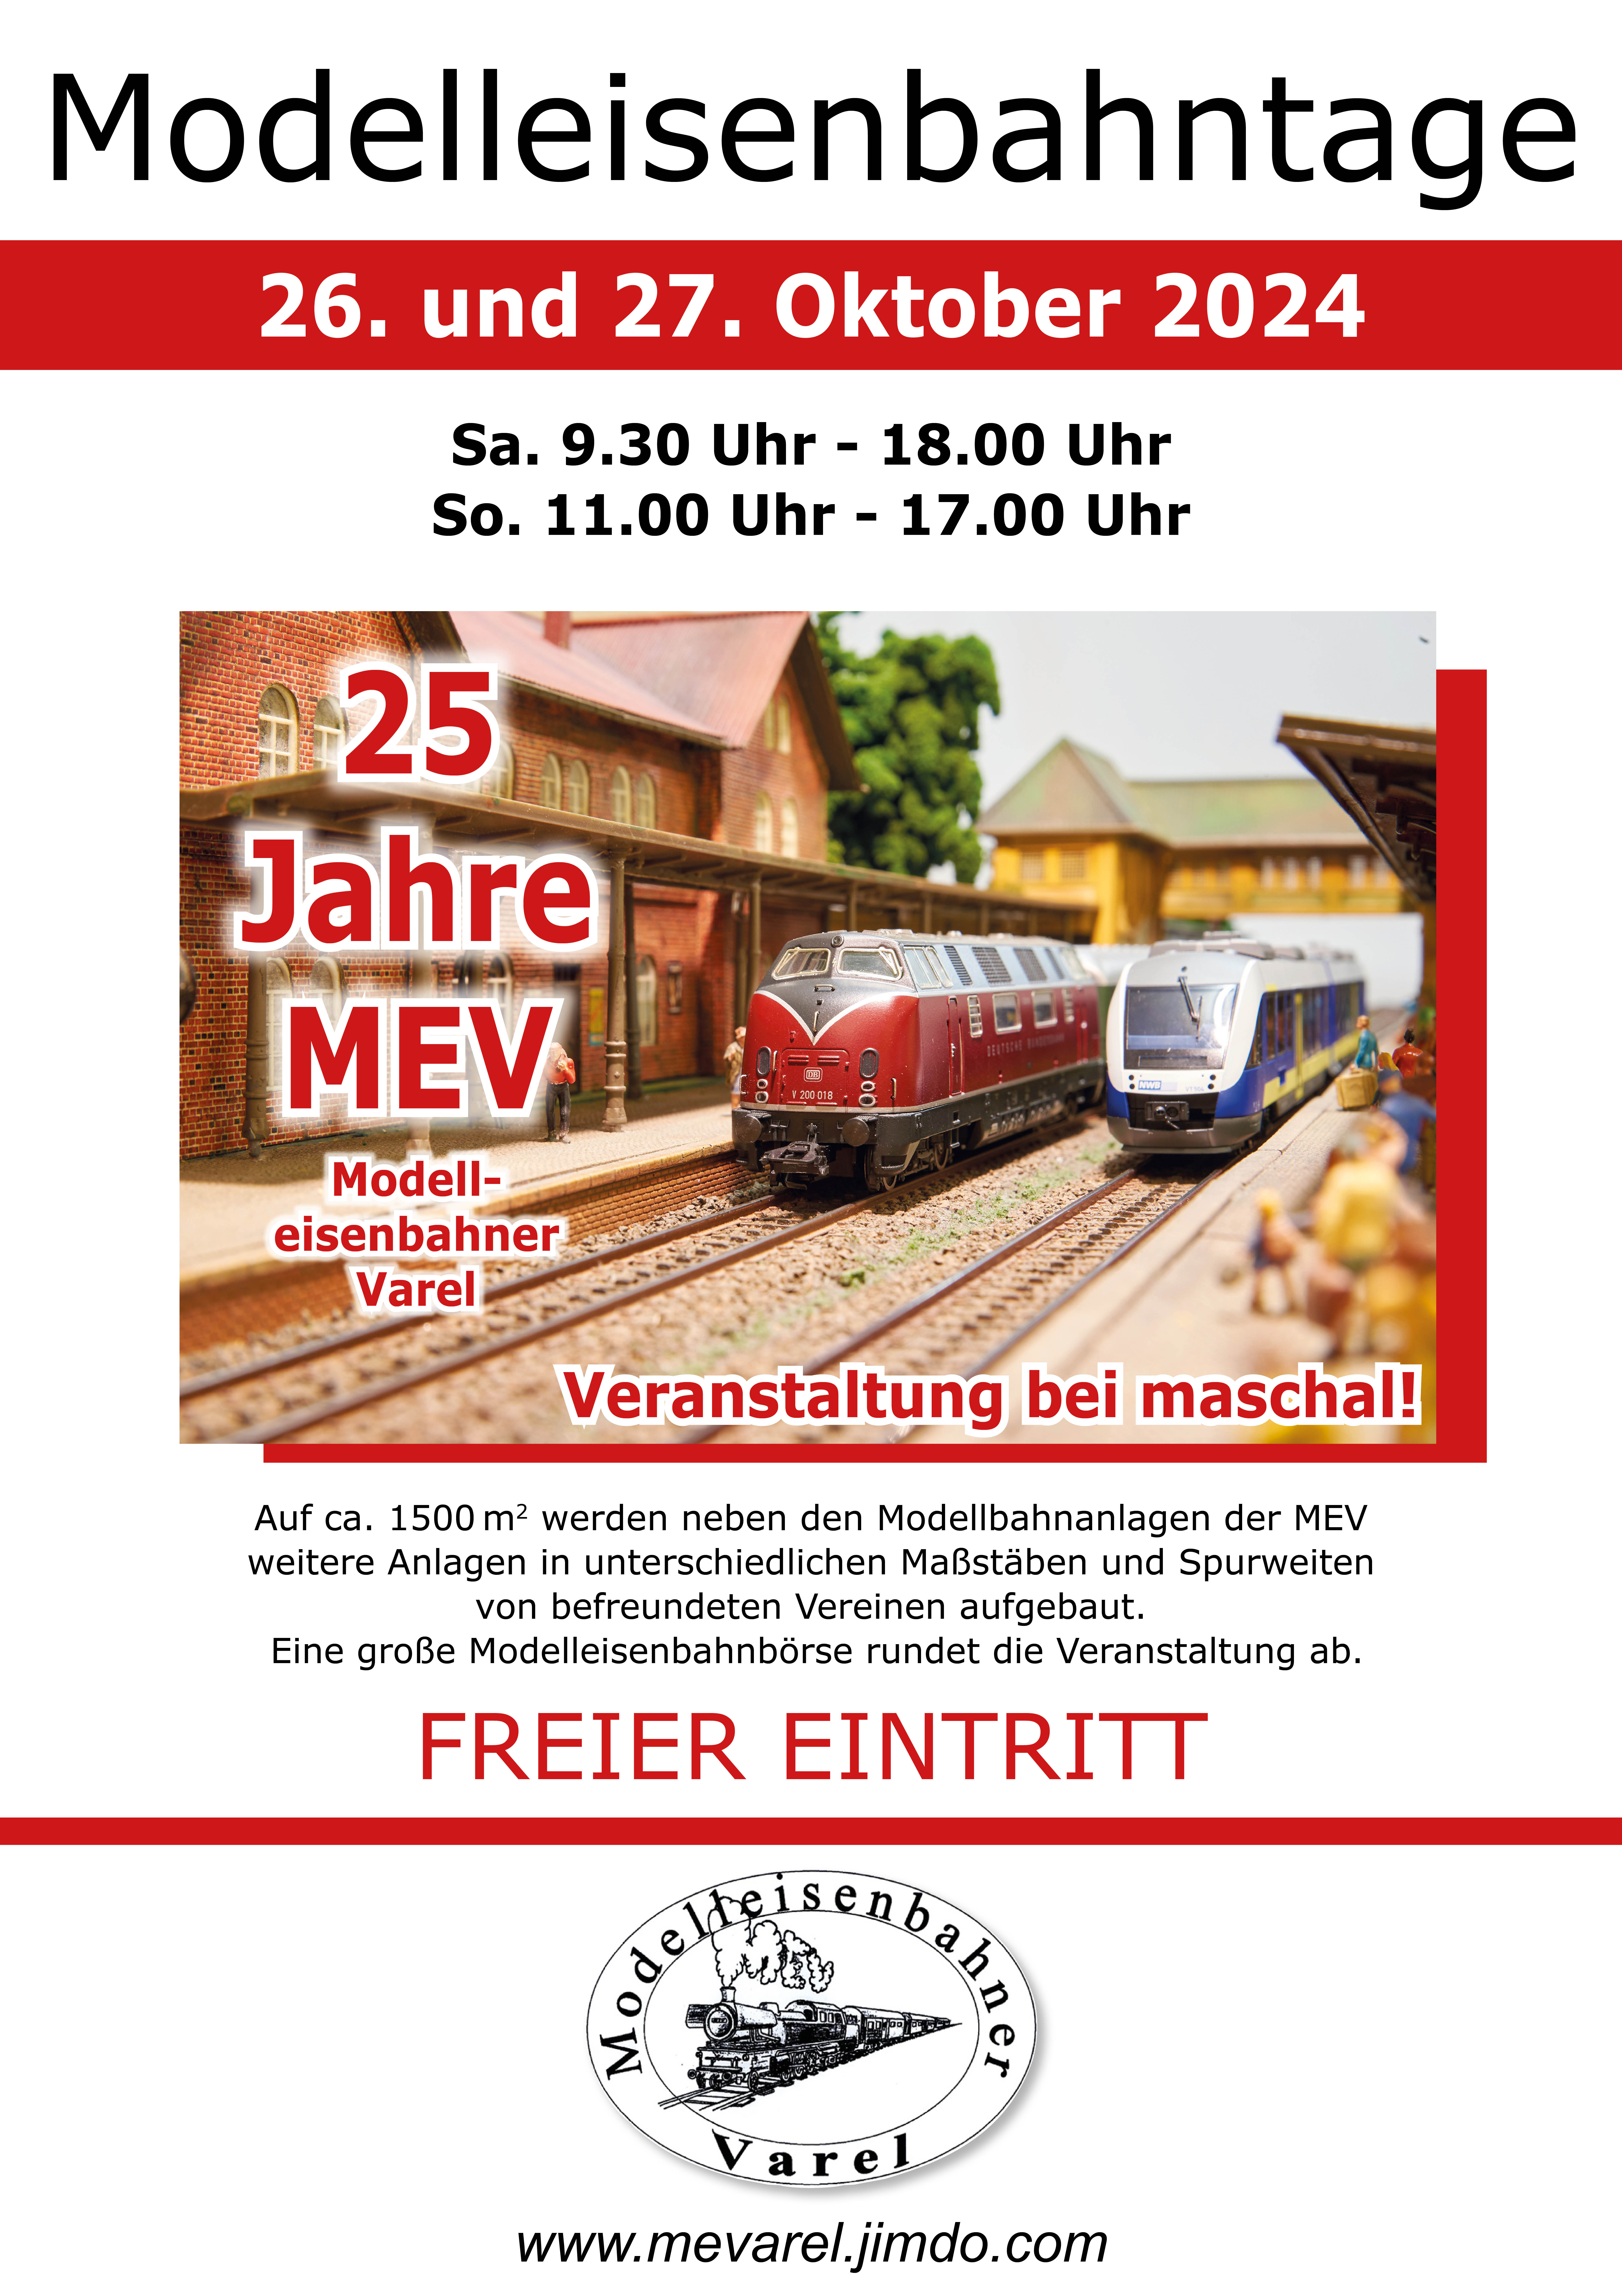 Sparen-maschal-Varel-Oldenburg-Wilhelmshaven-Ostfriesland-Modellbahn-Eisenbahn-Ausstellung-Veranstaltung